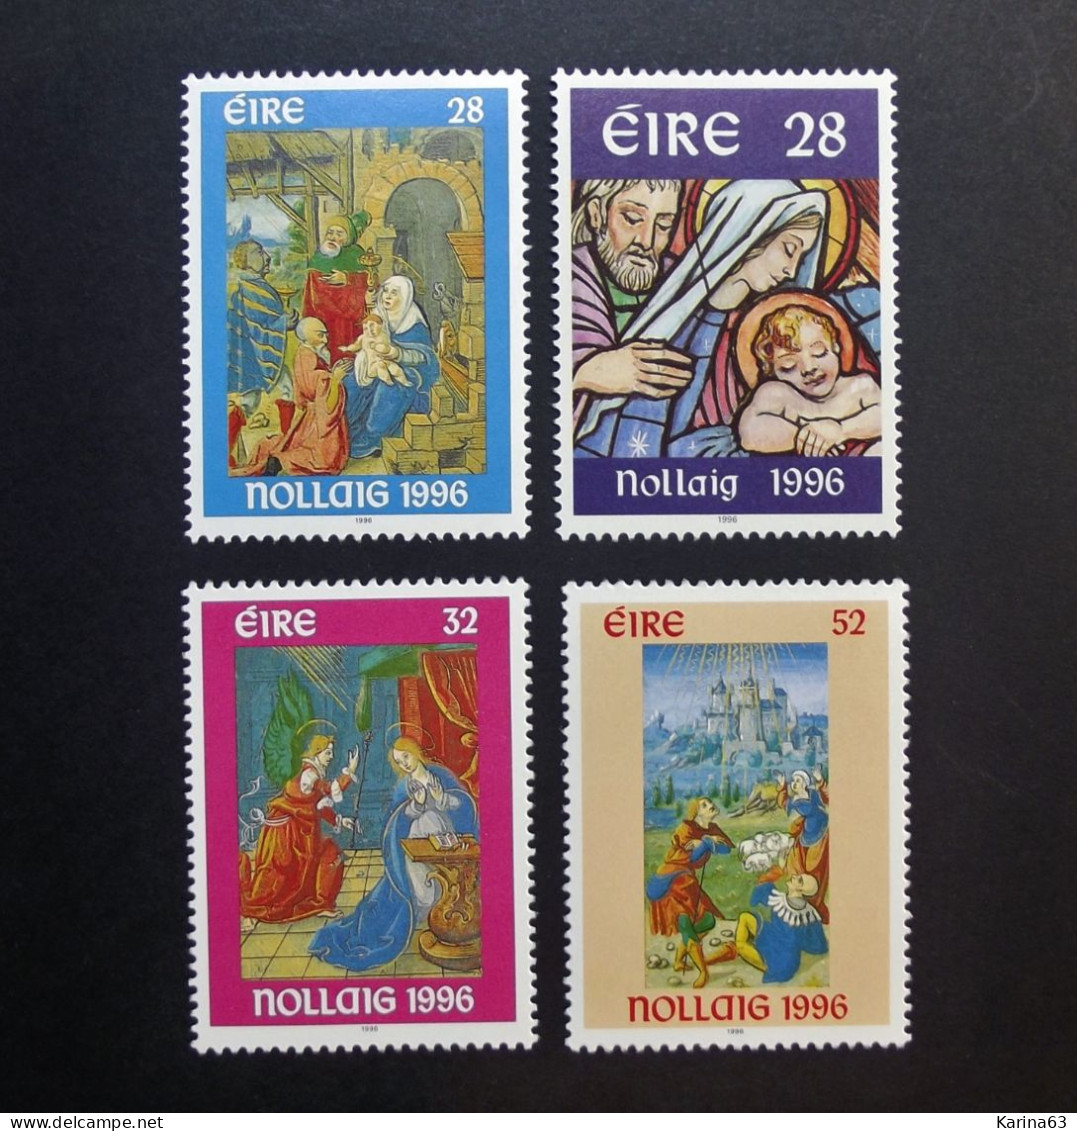 Ireland - Irelande - Eire - 1996 - Y&T N° 975 / 978 ( 4 Val.) Christmas - Noel - Kerstmis - MNH - Postfris - Neufs